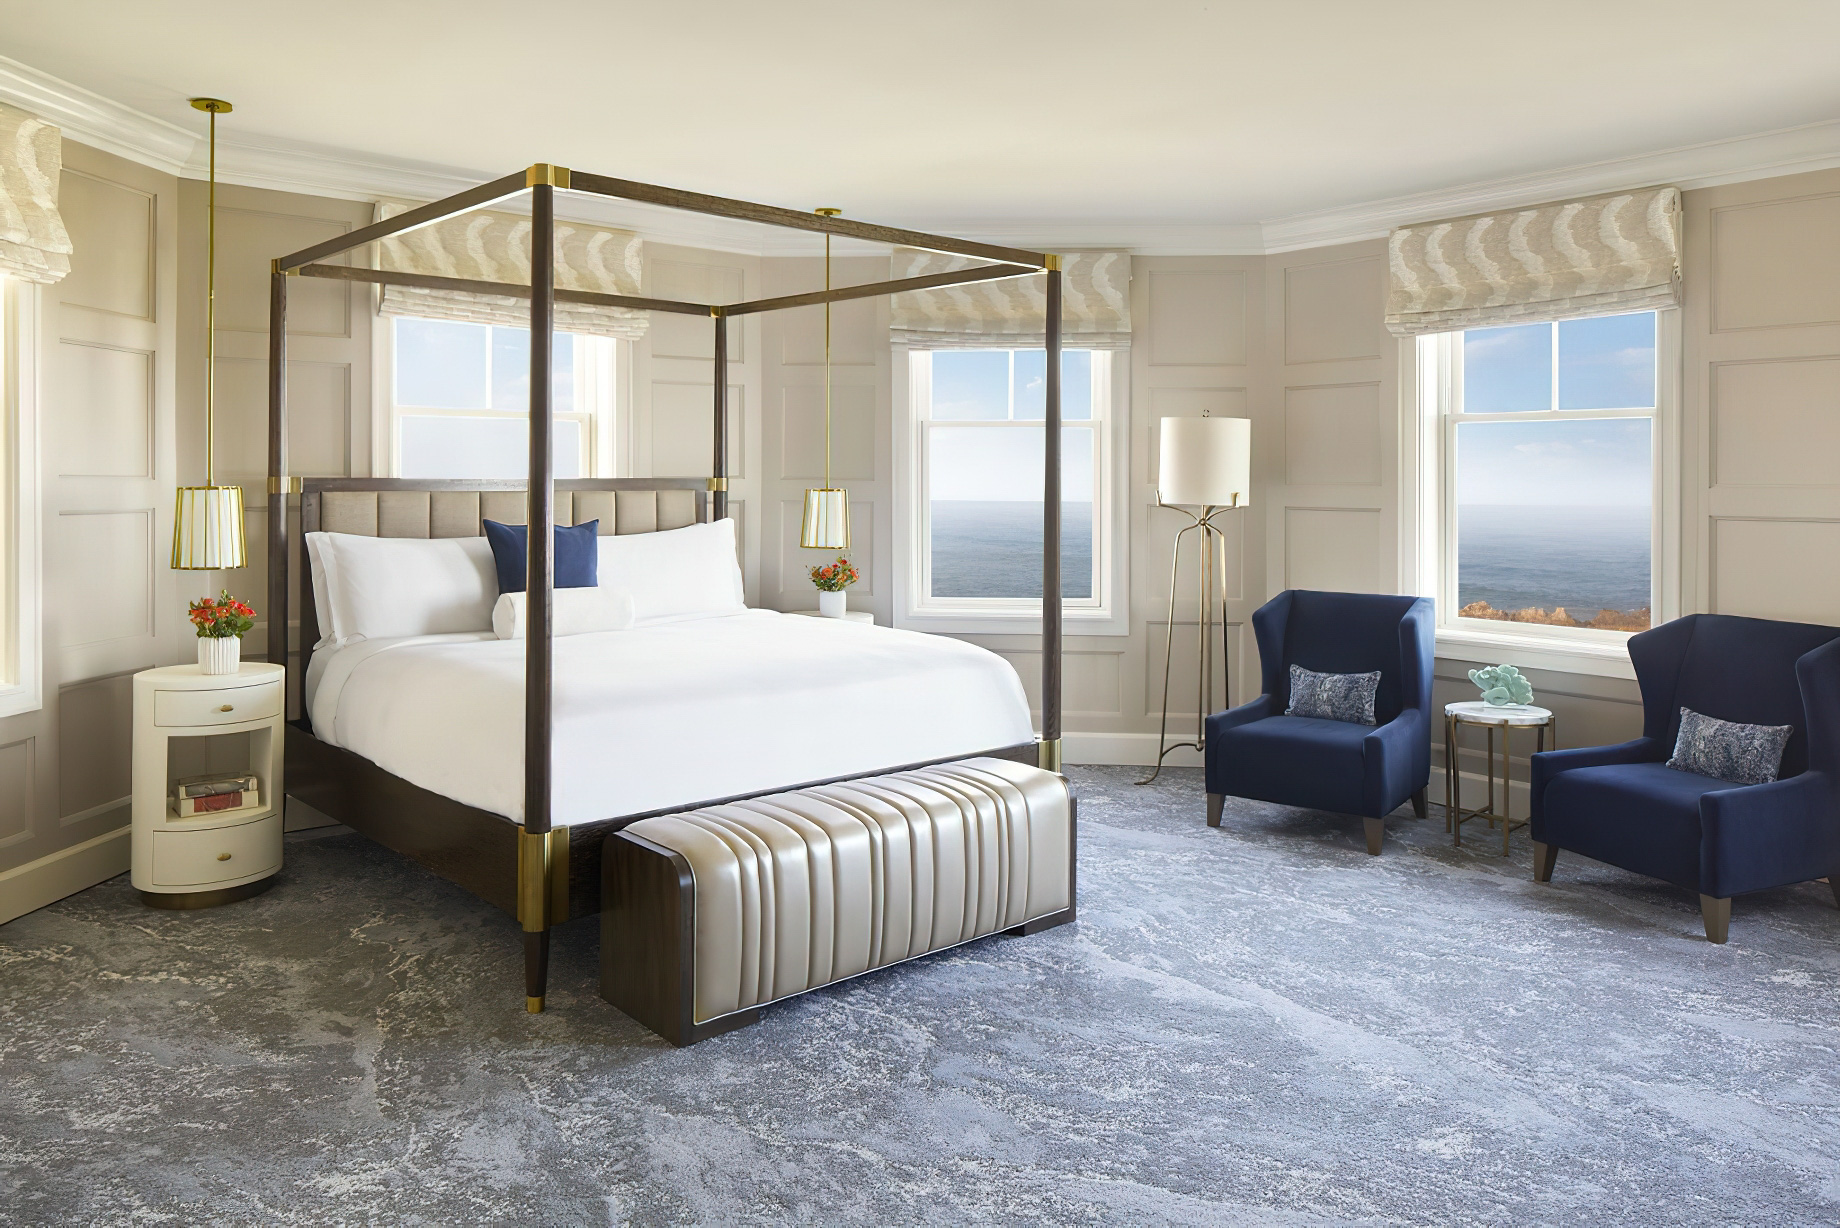 The Ritz-Carlton, Half Moon Bay Resort - Half Moon Bay, CA, USA - Signature Suite Bedroom